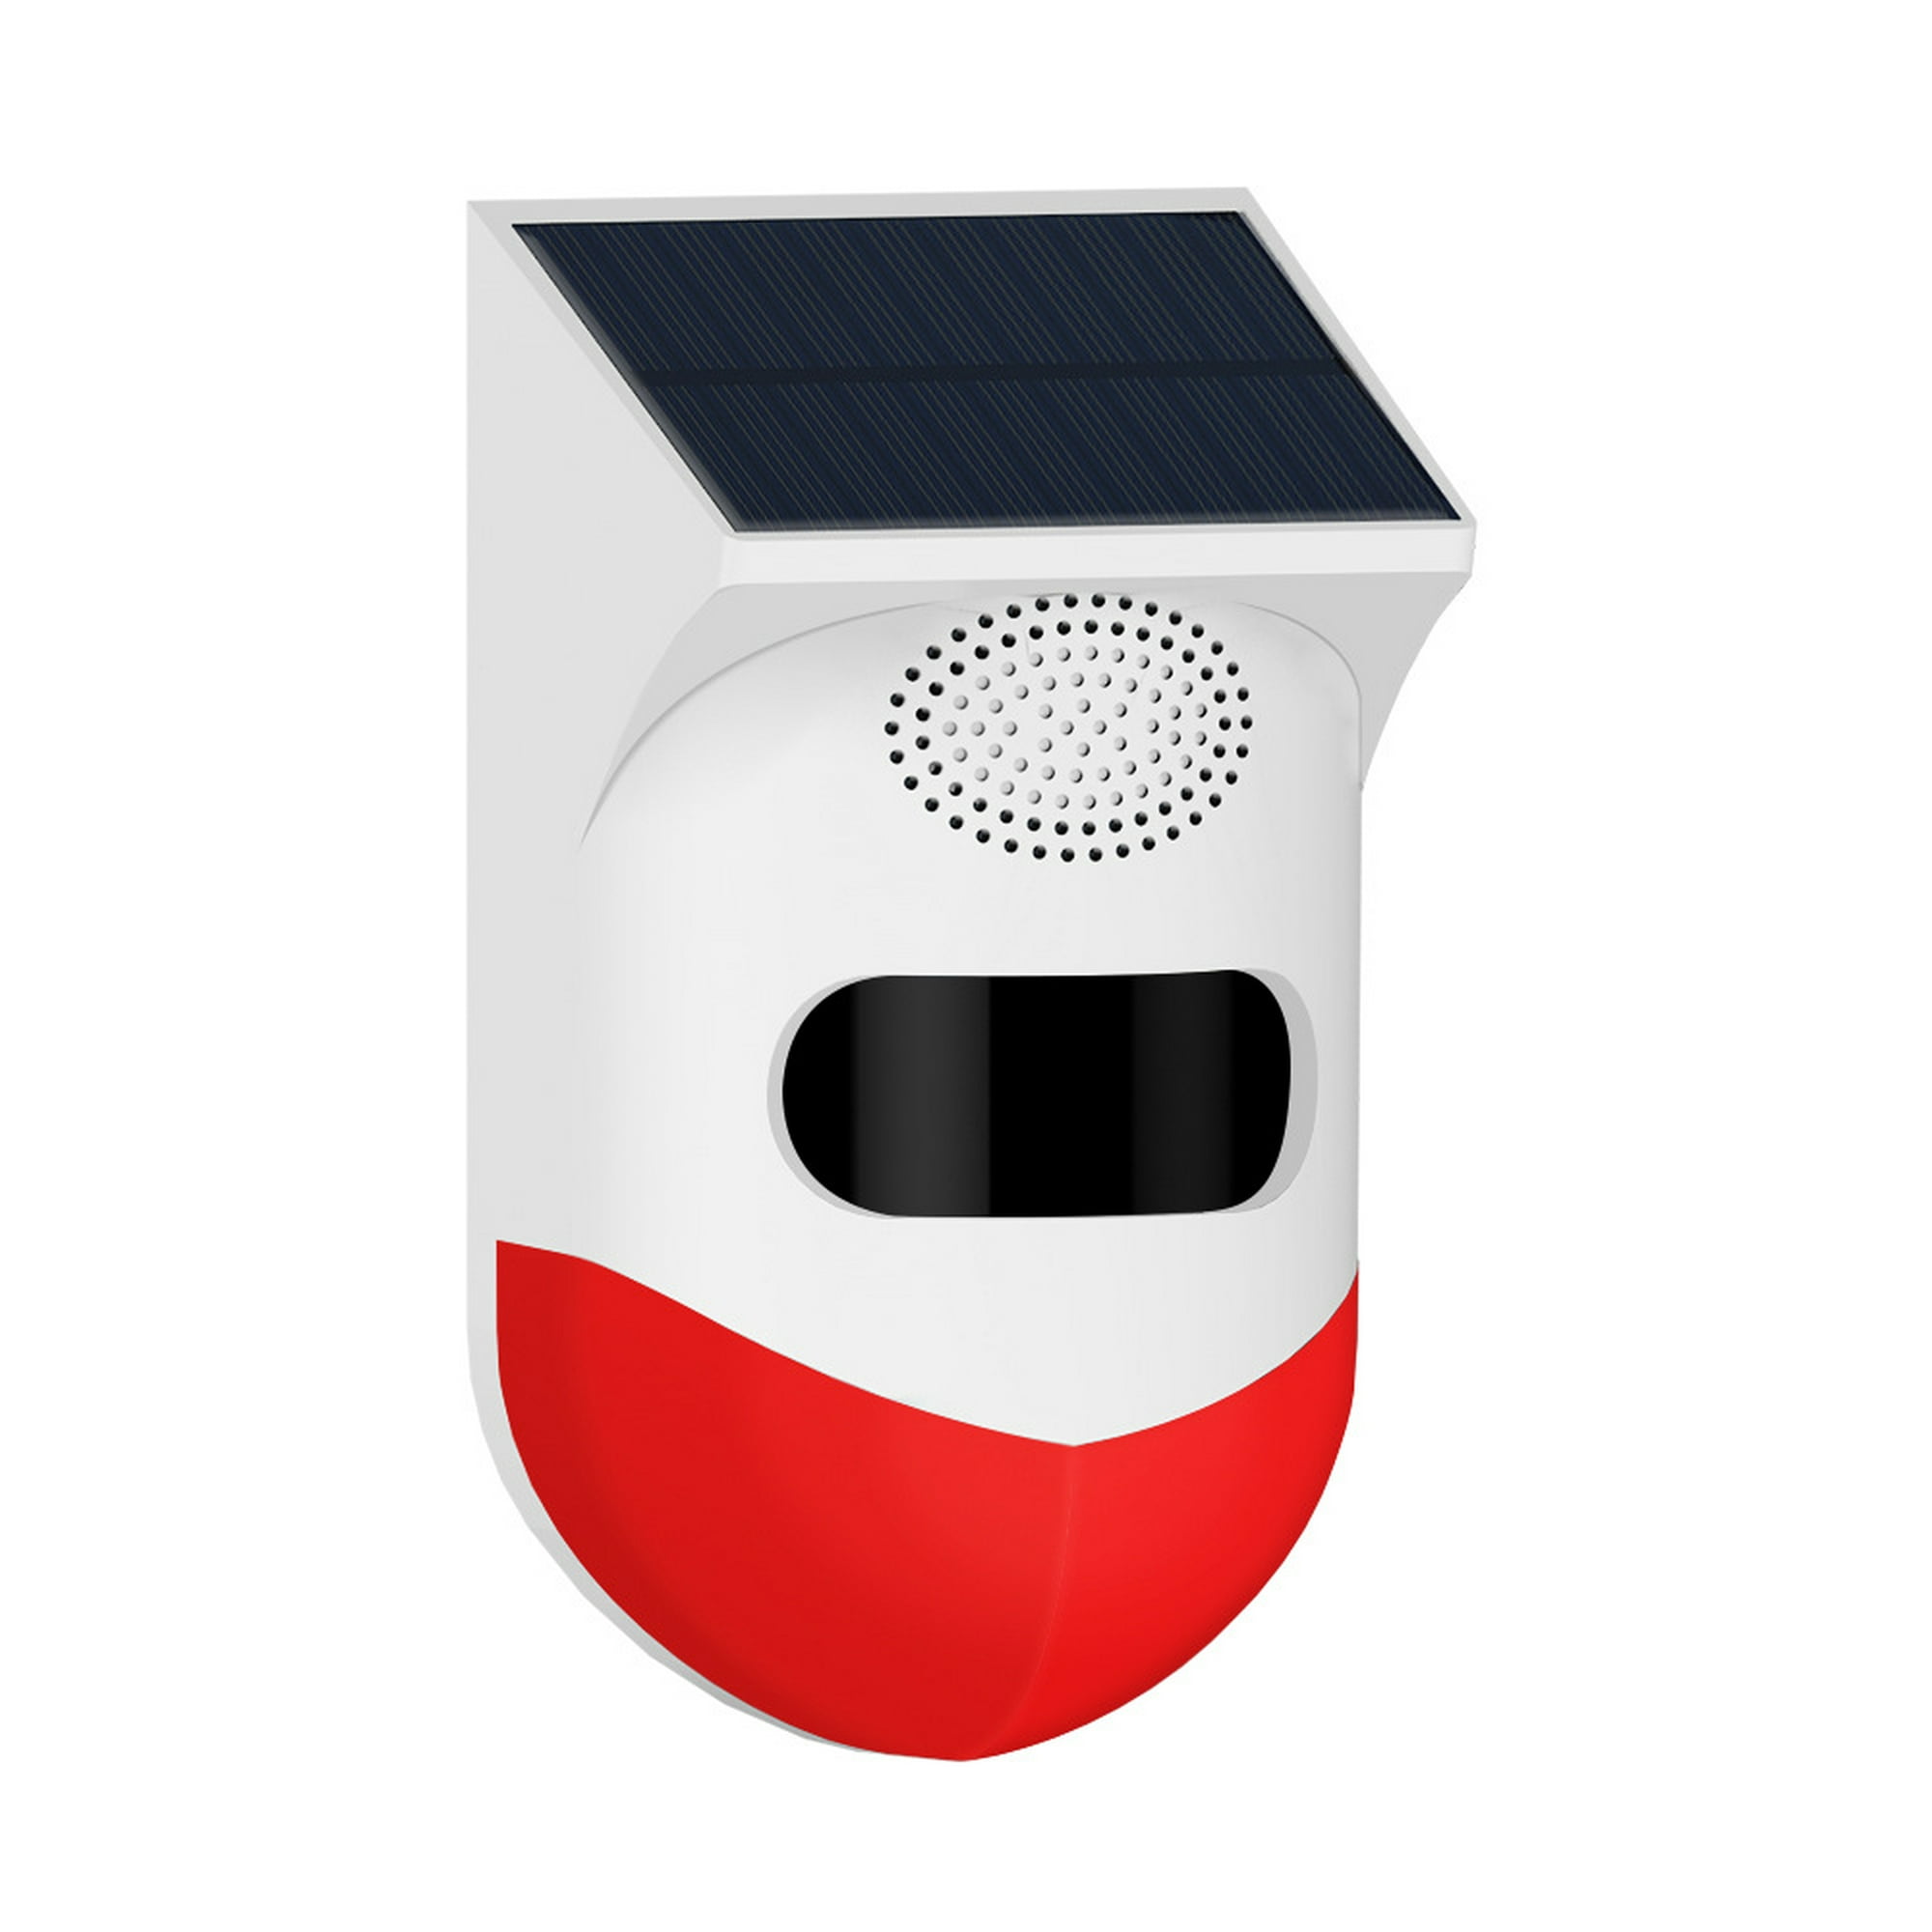 Alarma Sensor de movimiento Alarma de sonido exterior Sirena Alarma solar  con detector de movimiento 129db Sirena de seguridad Luz IP65 Impermeable